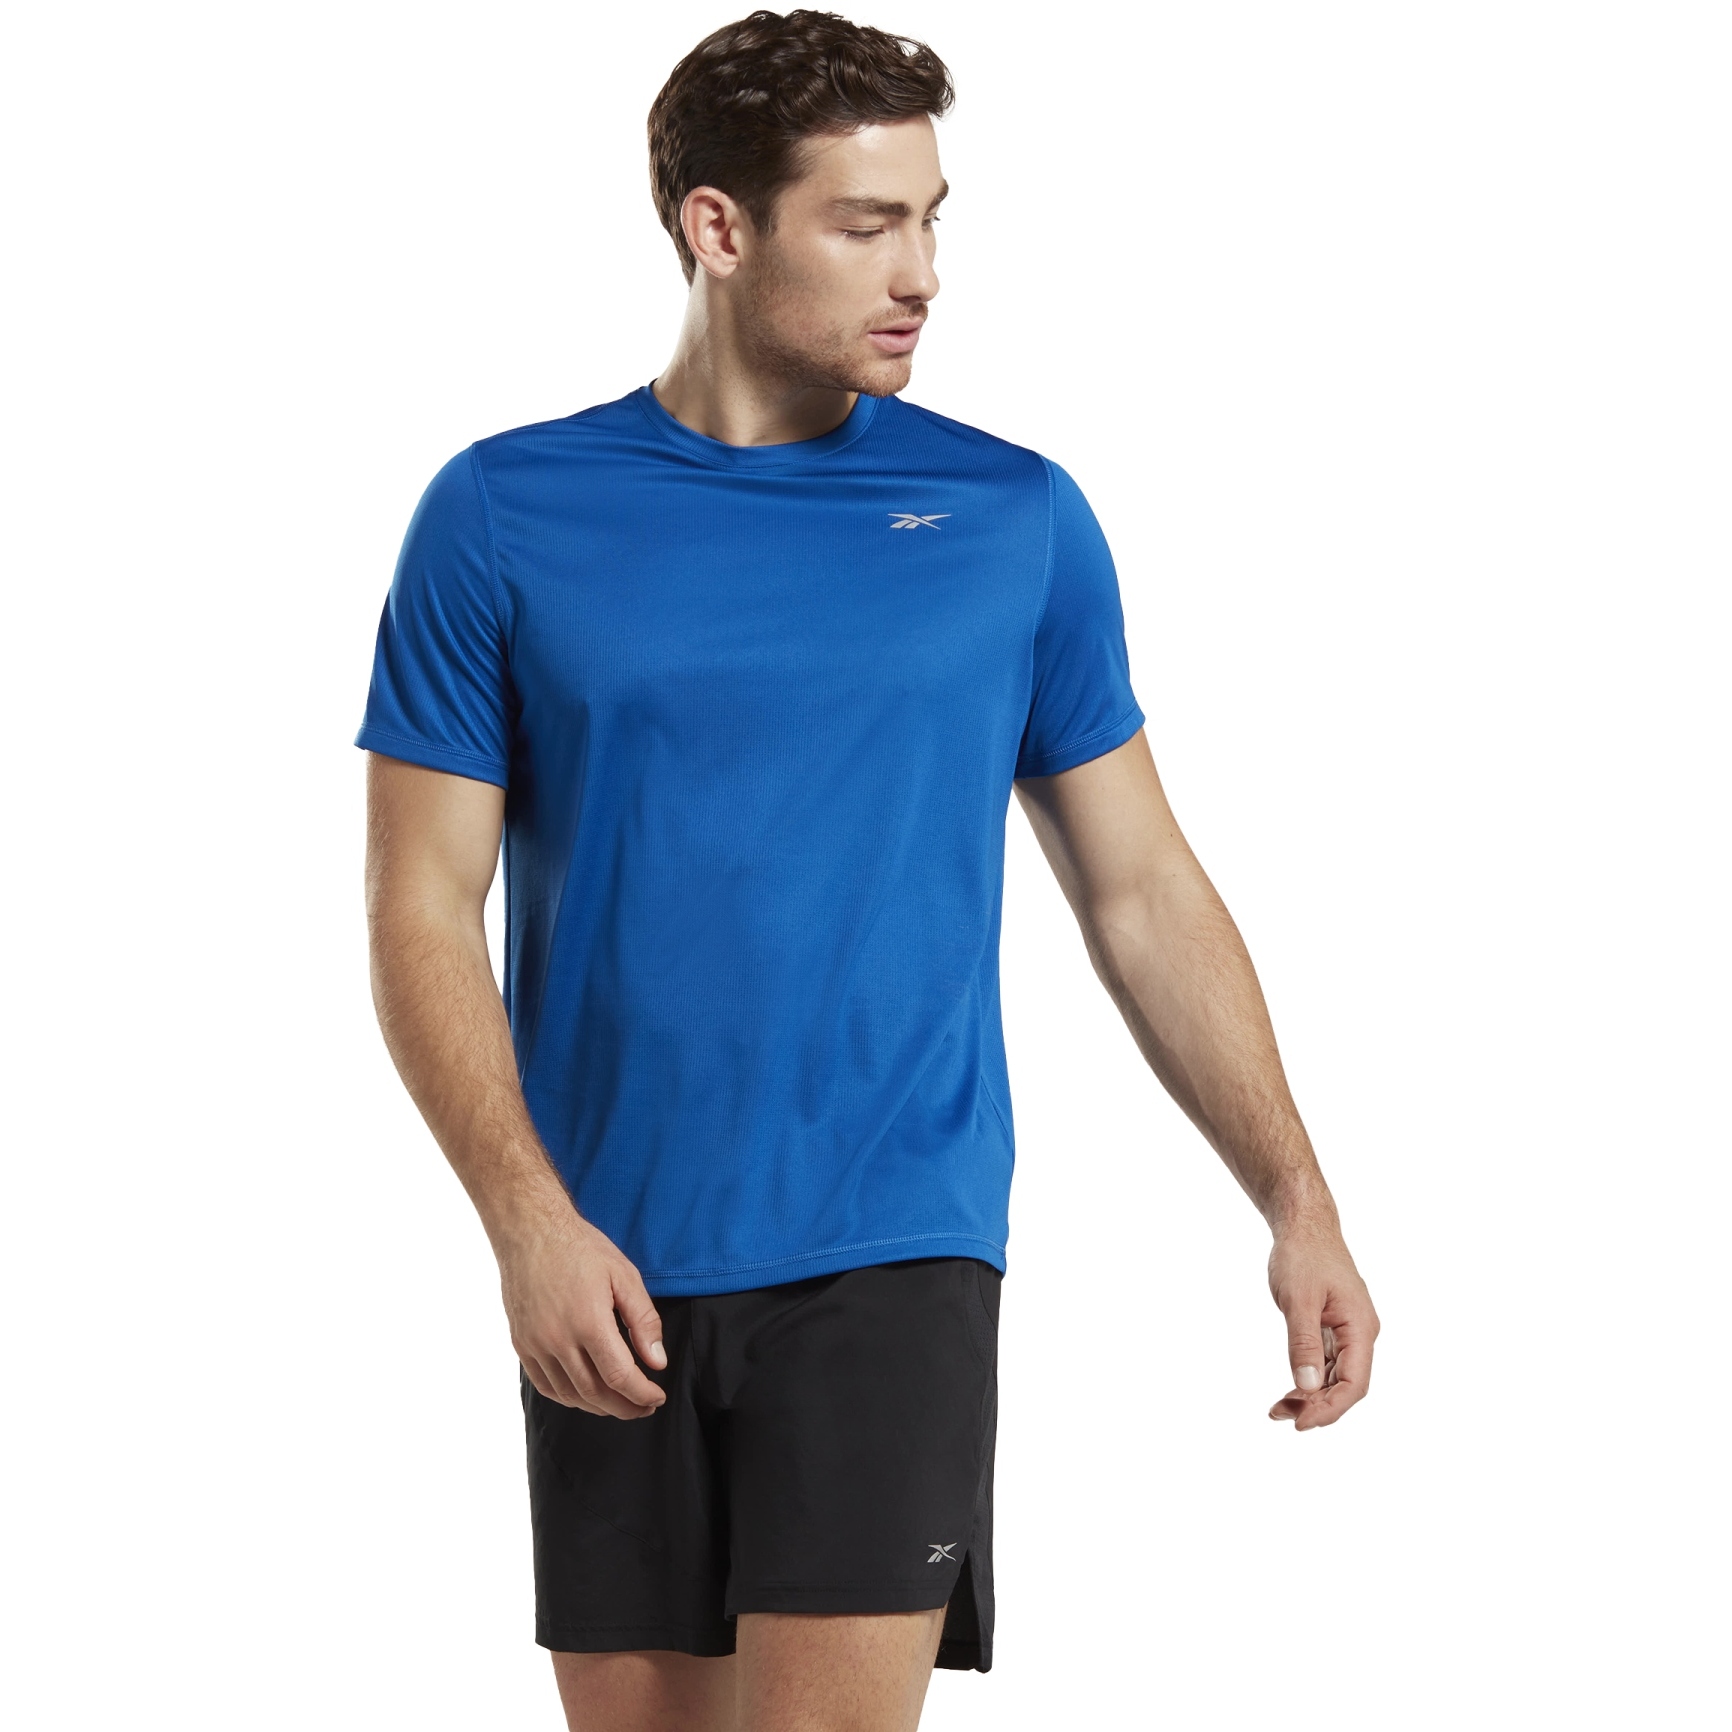 Produktbild von Reebok Running GFX T-Shirt Herren - vector blue